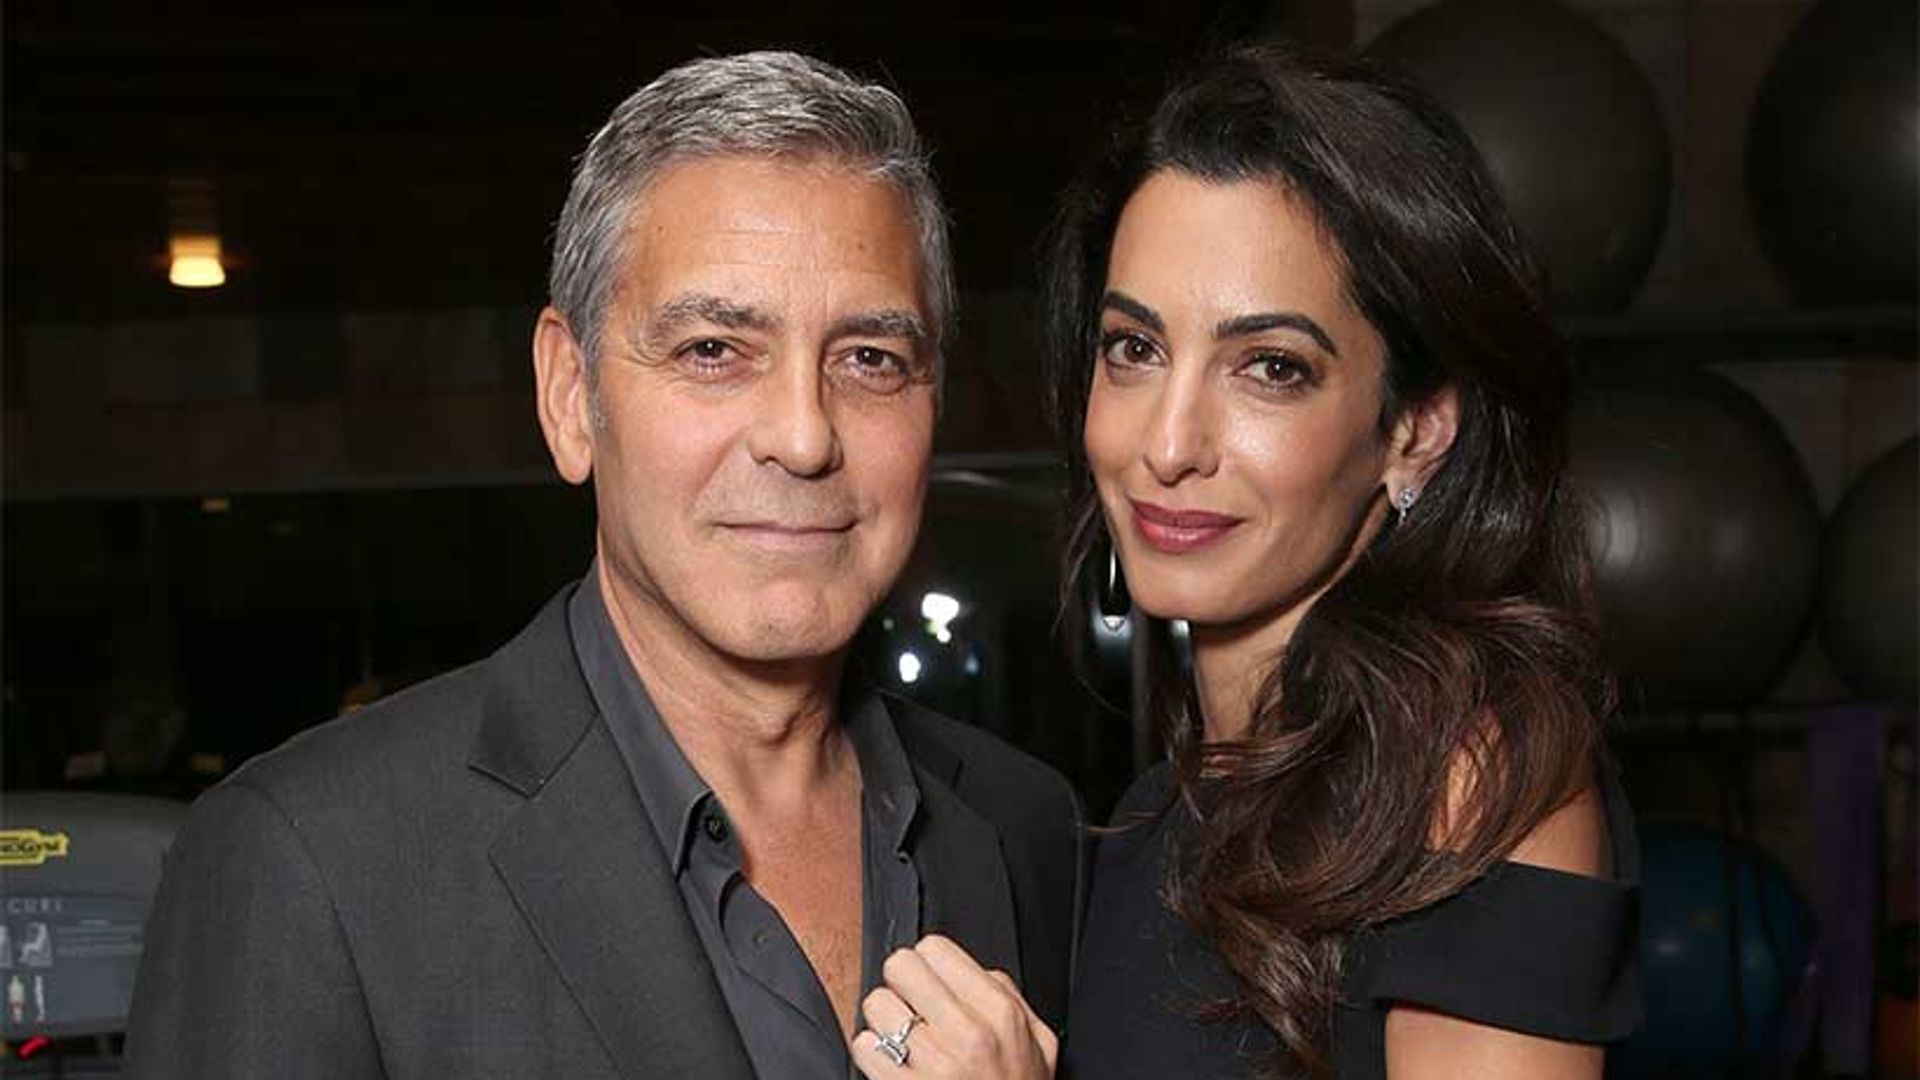 George Amal Clooney